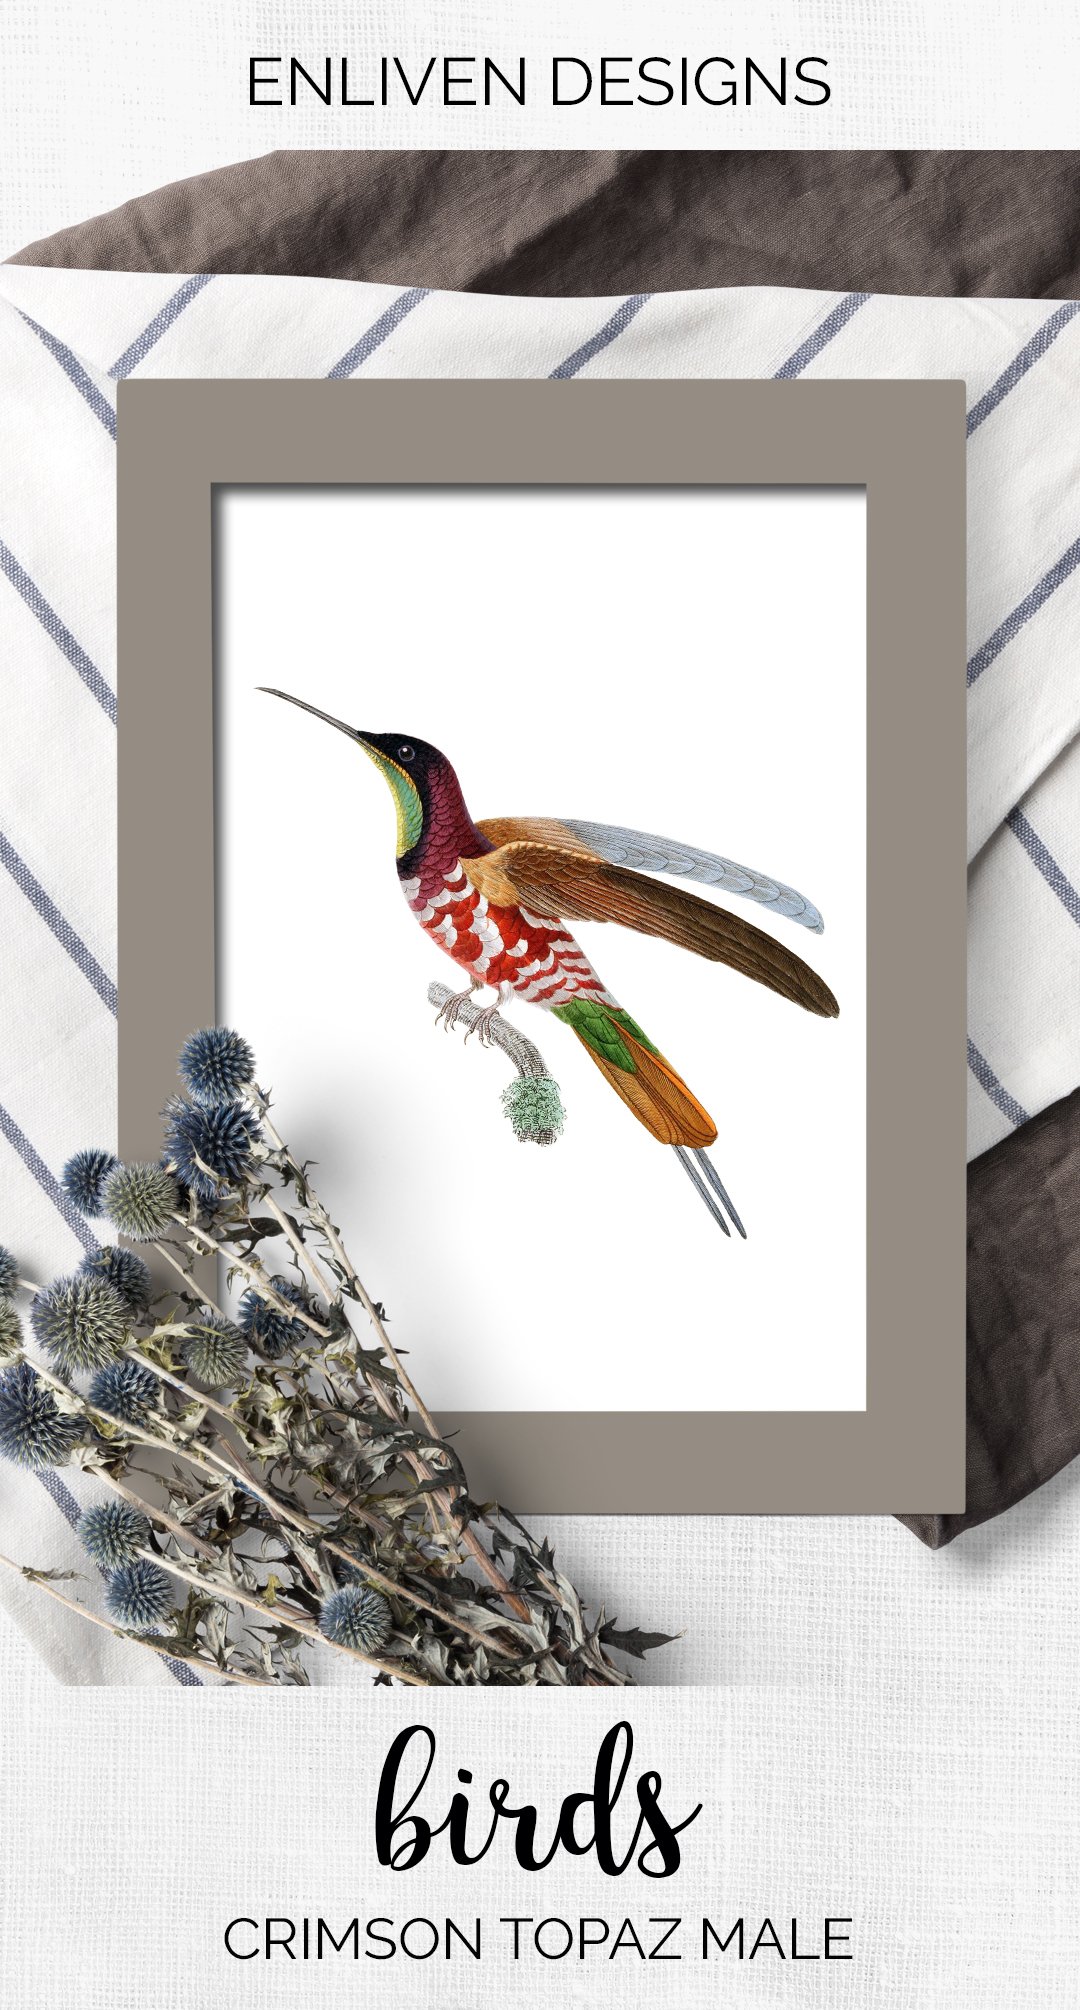 e01v01m 84561 crimson topaz male hummingbird 1 h 76